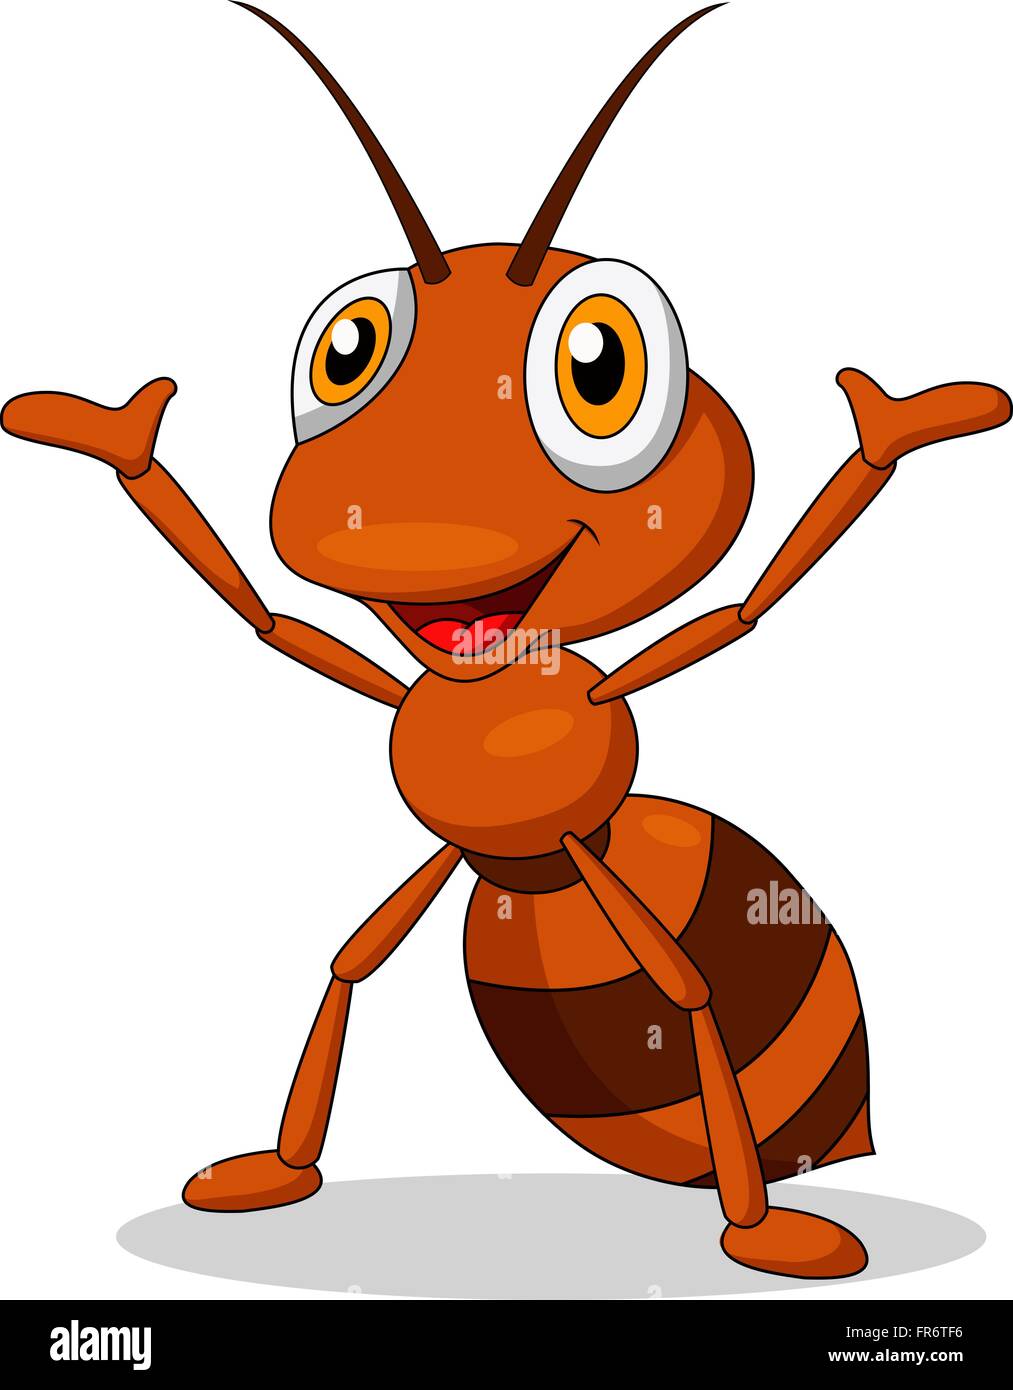 Cute ant cartoon waving Stock Vector